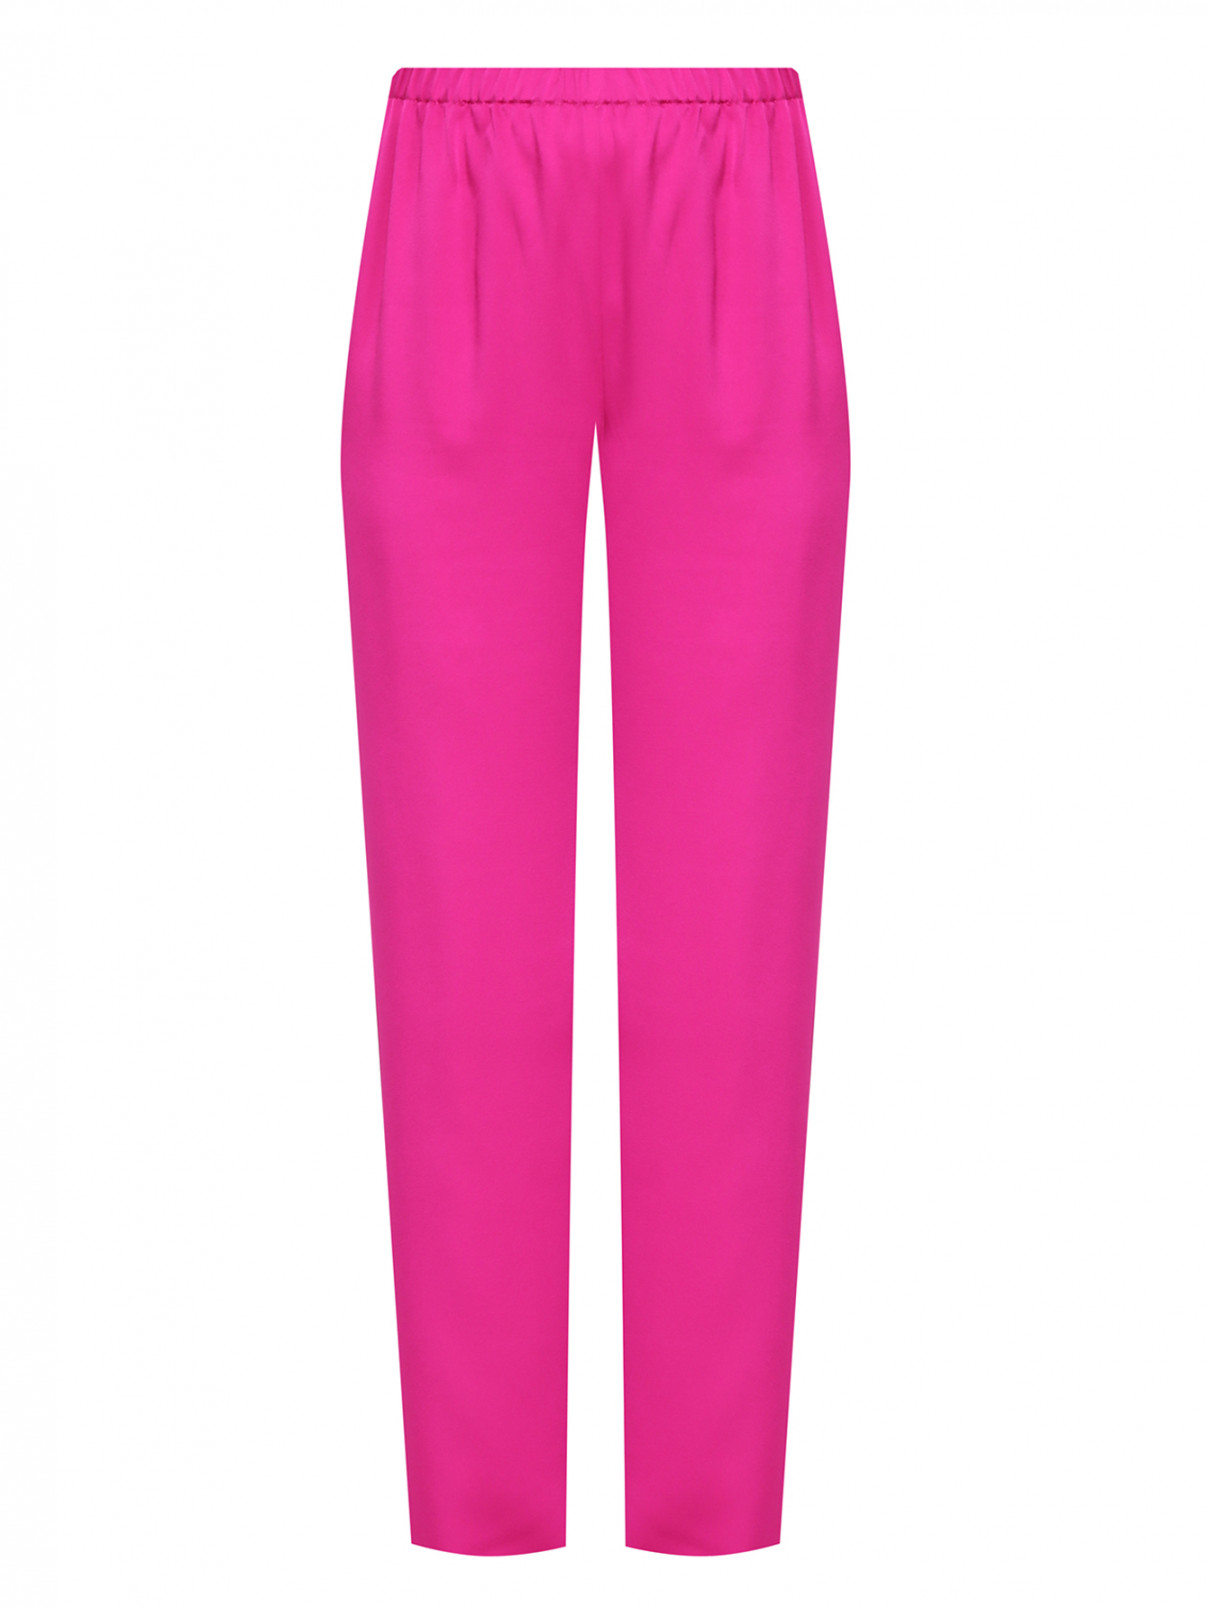 Однотонные брюки на резинке Marina Rinaldi  –  Общий вид  – Цвет:  Розовый